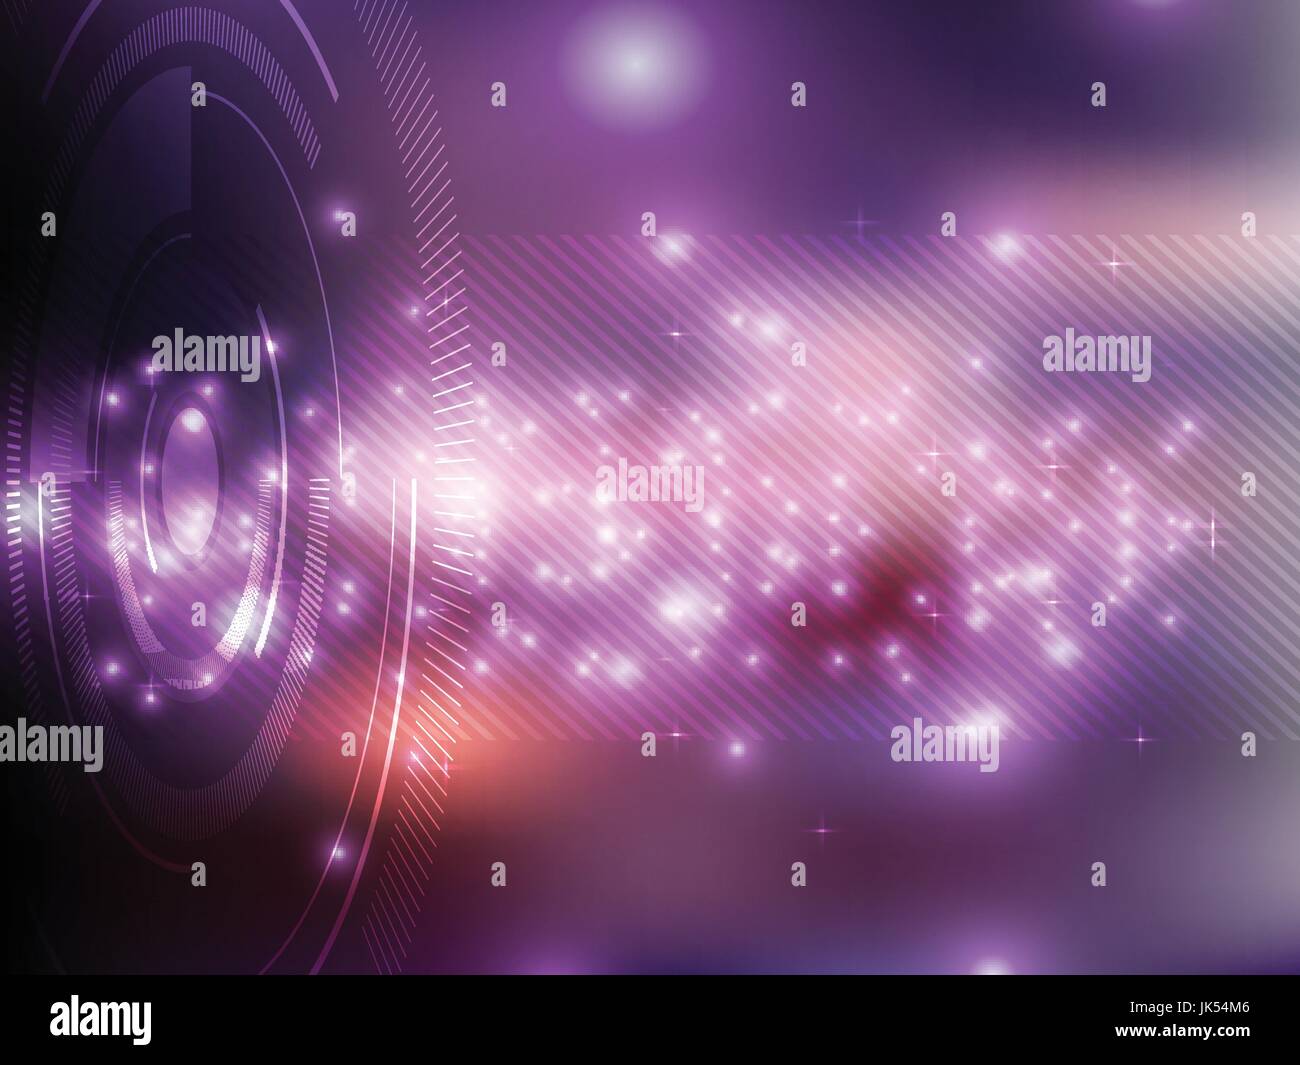 Technik Hintergrund Lila futuristische abstrakt mit hellen Lichtern Vektor-illustration Stock Vektor